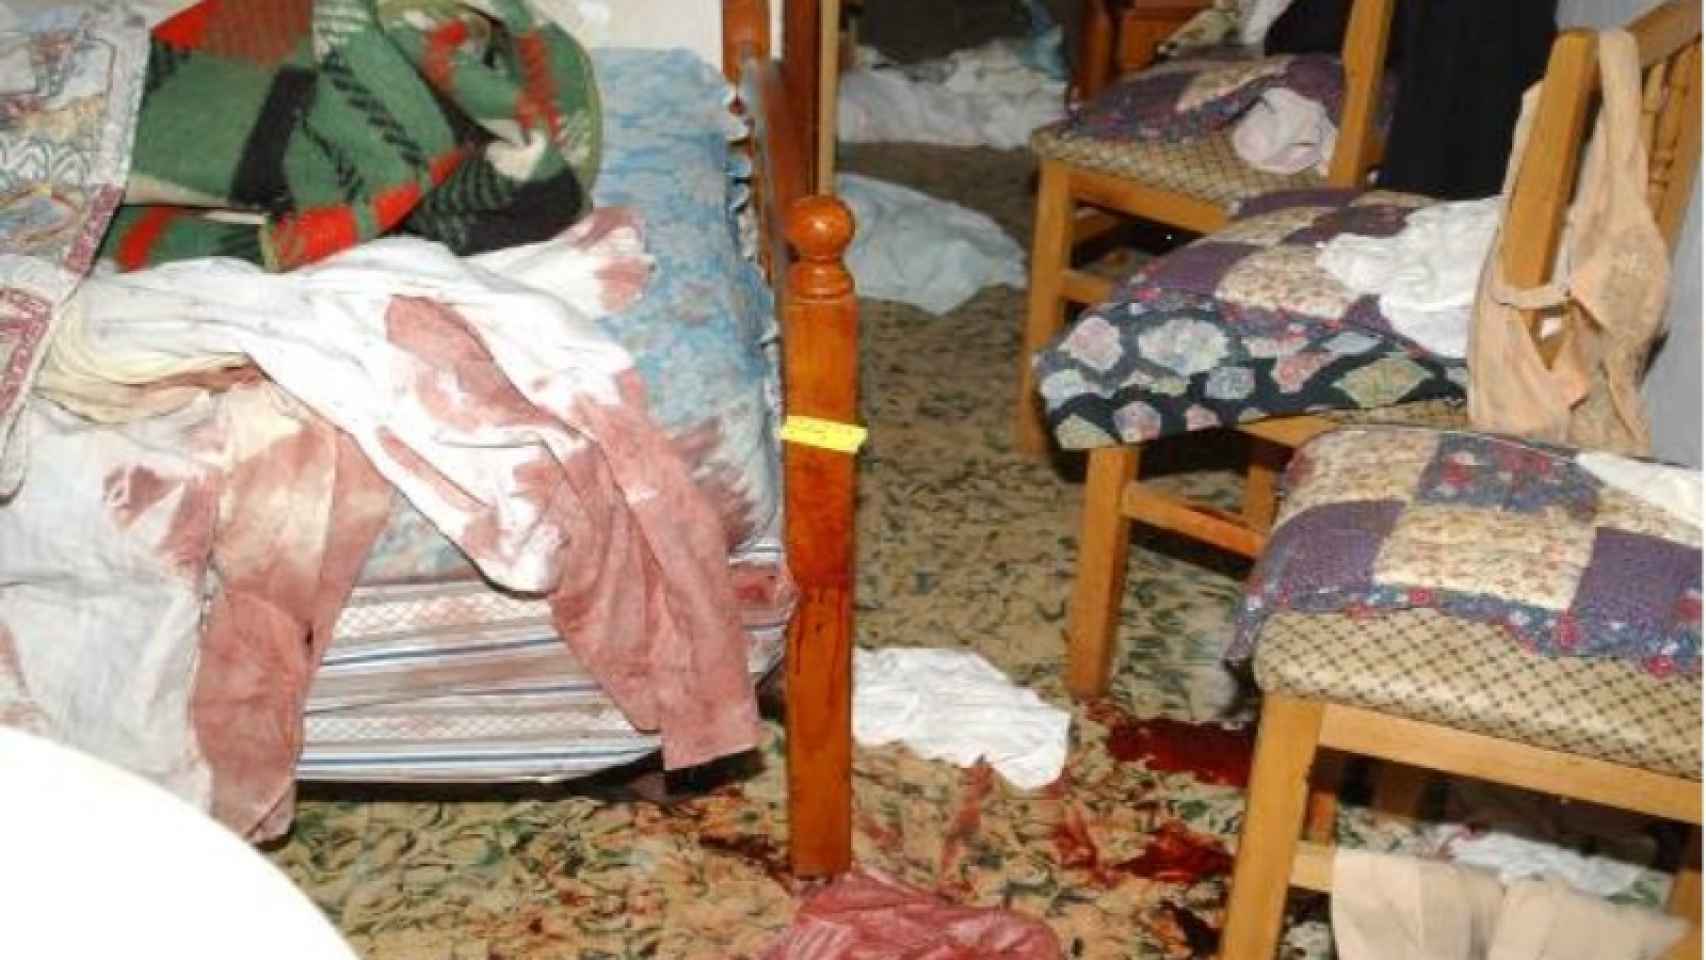 Dormitorio de Antonio el churrero tras su asesinato hace 13 años